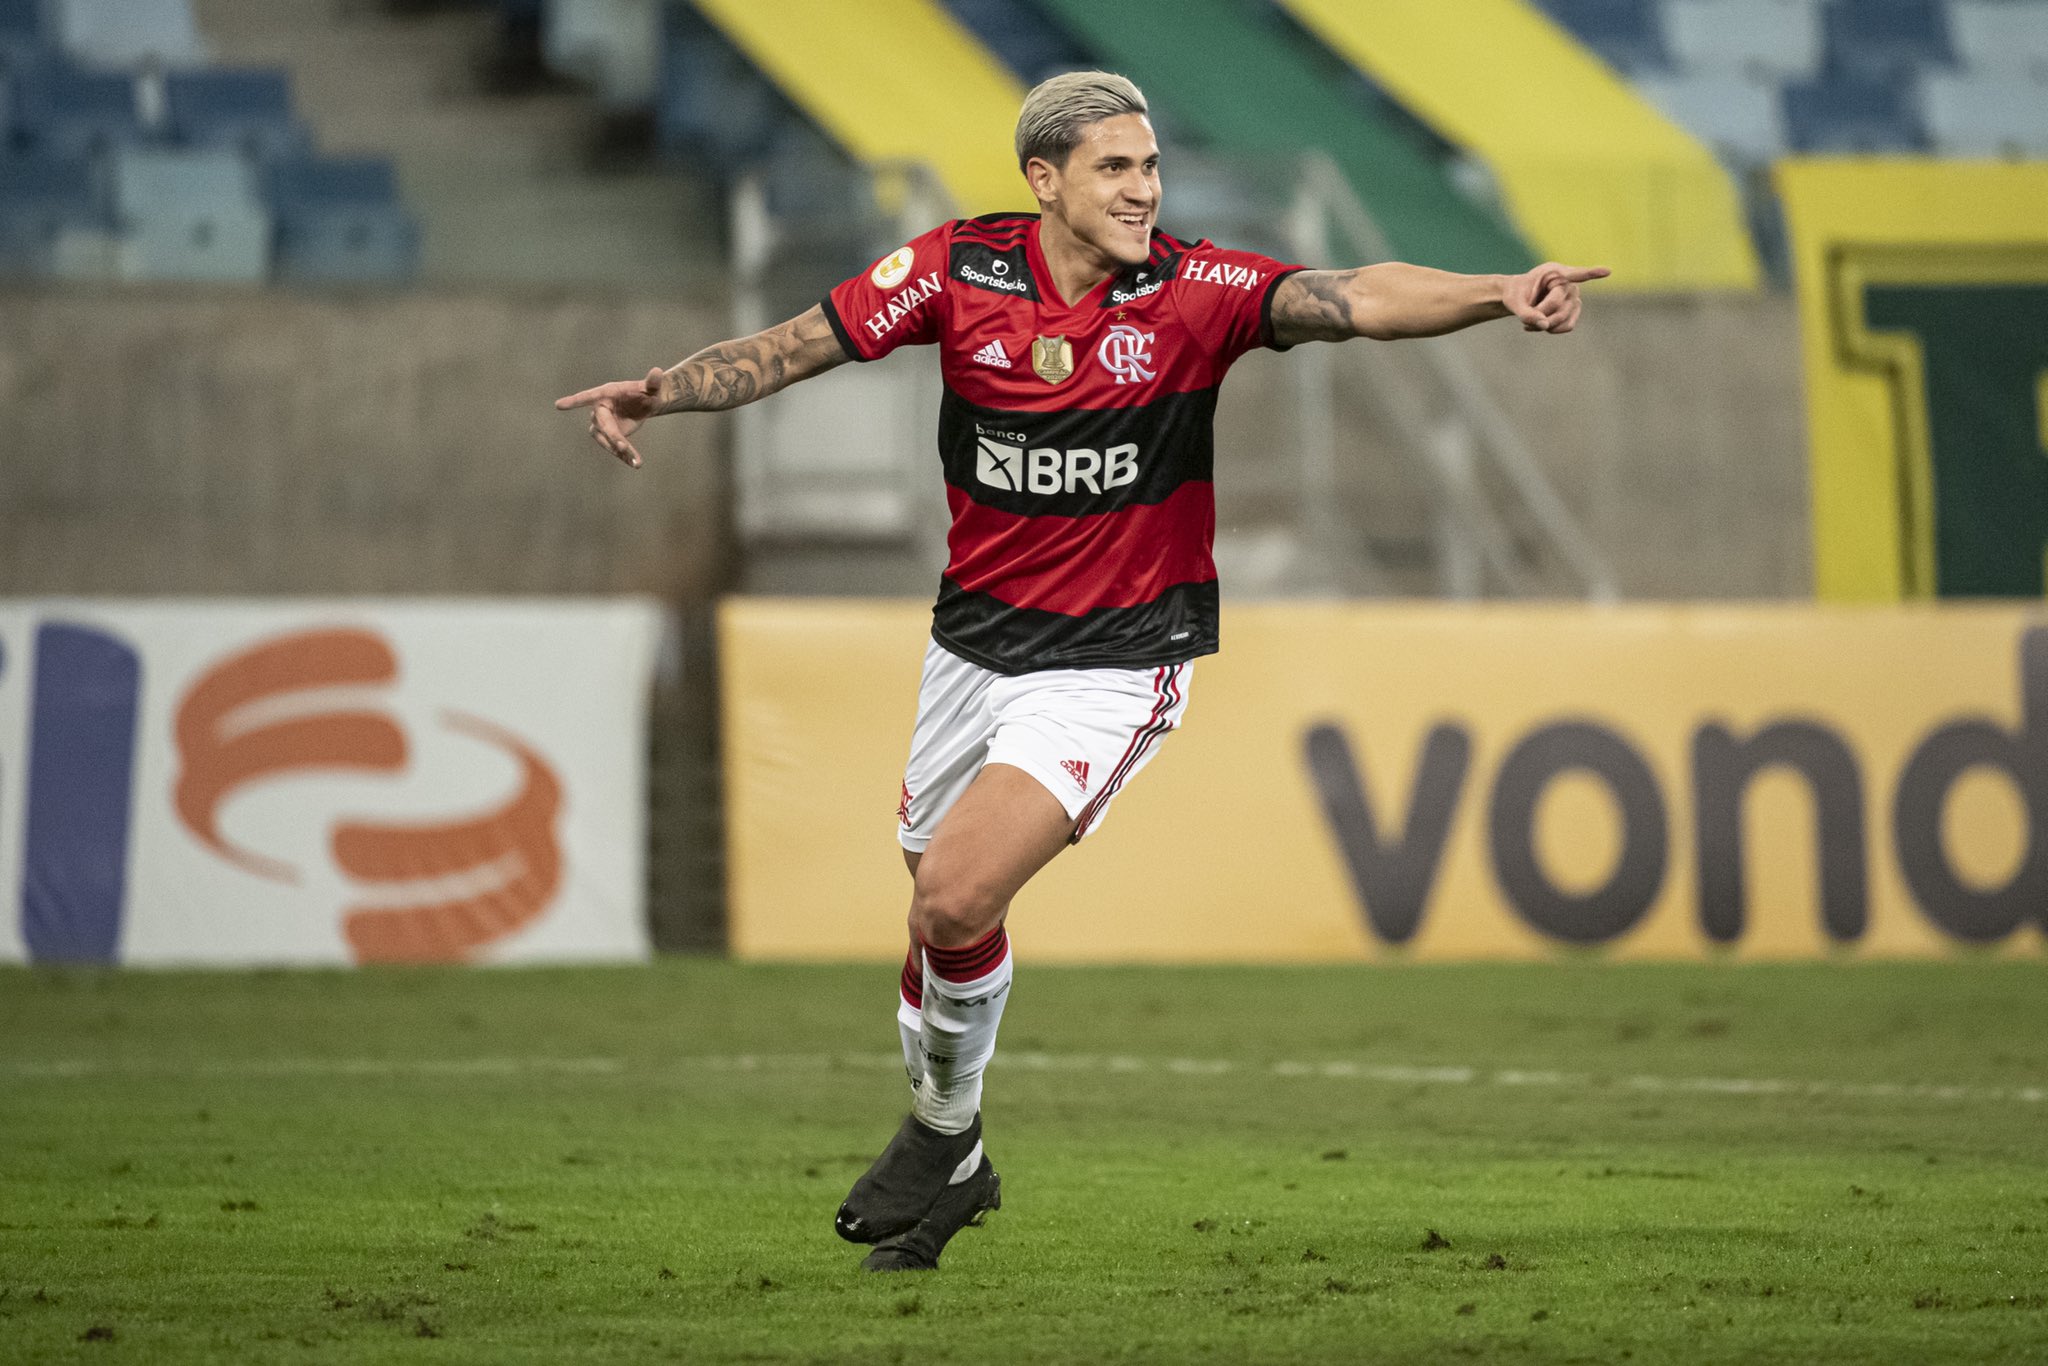 PLACAR FI: Com vitórias de Atlético-MG e Flamengo, confira TODOS os RESULTADOS desta QUINTA